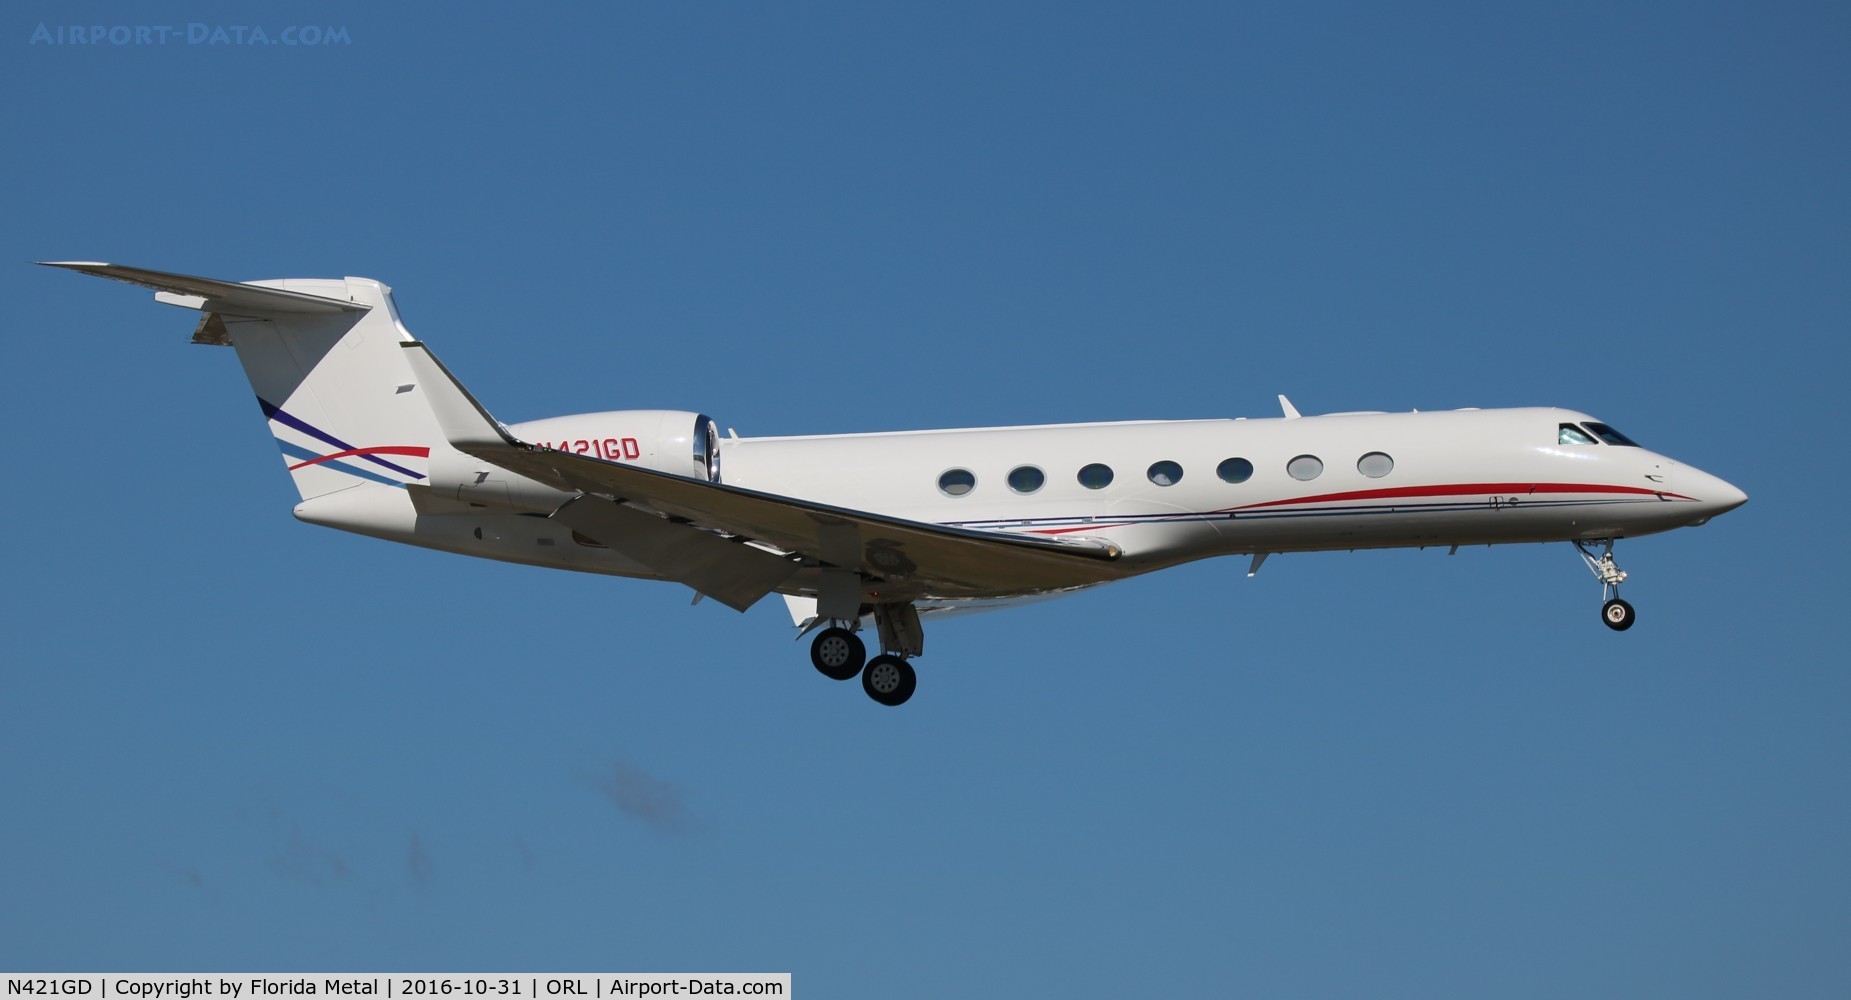 N421GD, 2013 Gulfstream Aerospace GV-SP (G550) C/N 5421, Gulfstream 550